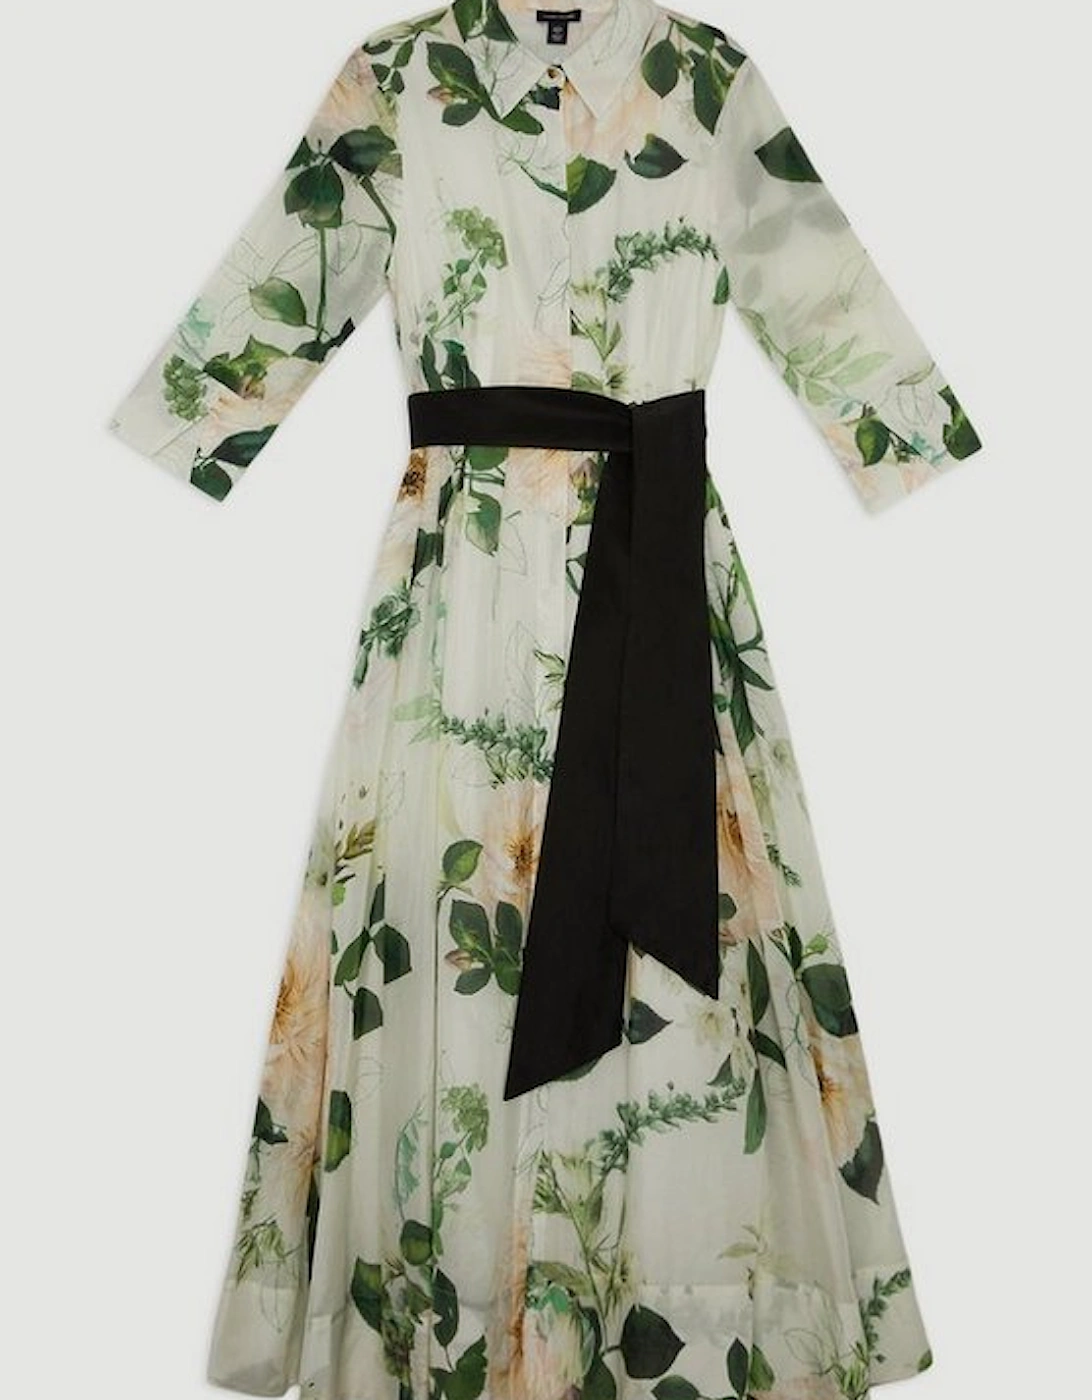 Lydia Millen Spring Floral Silk Cotton Woven Shirt Dress